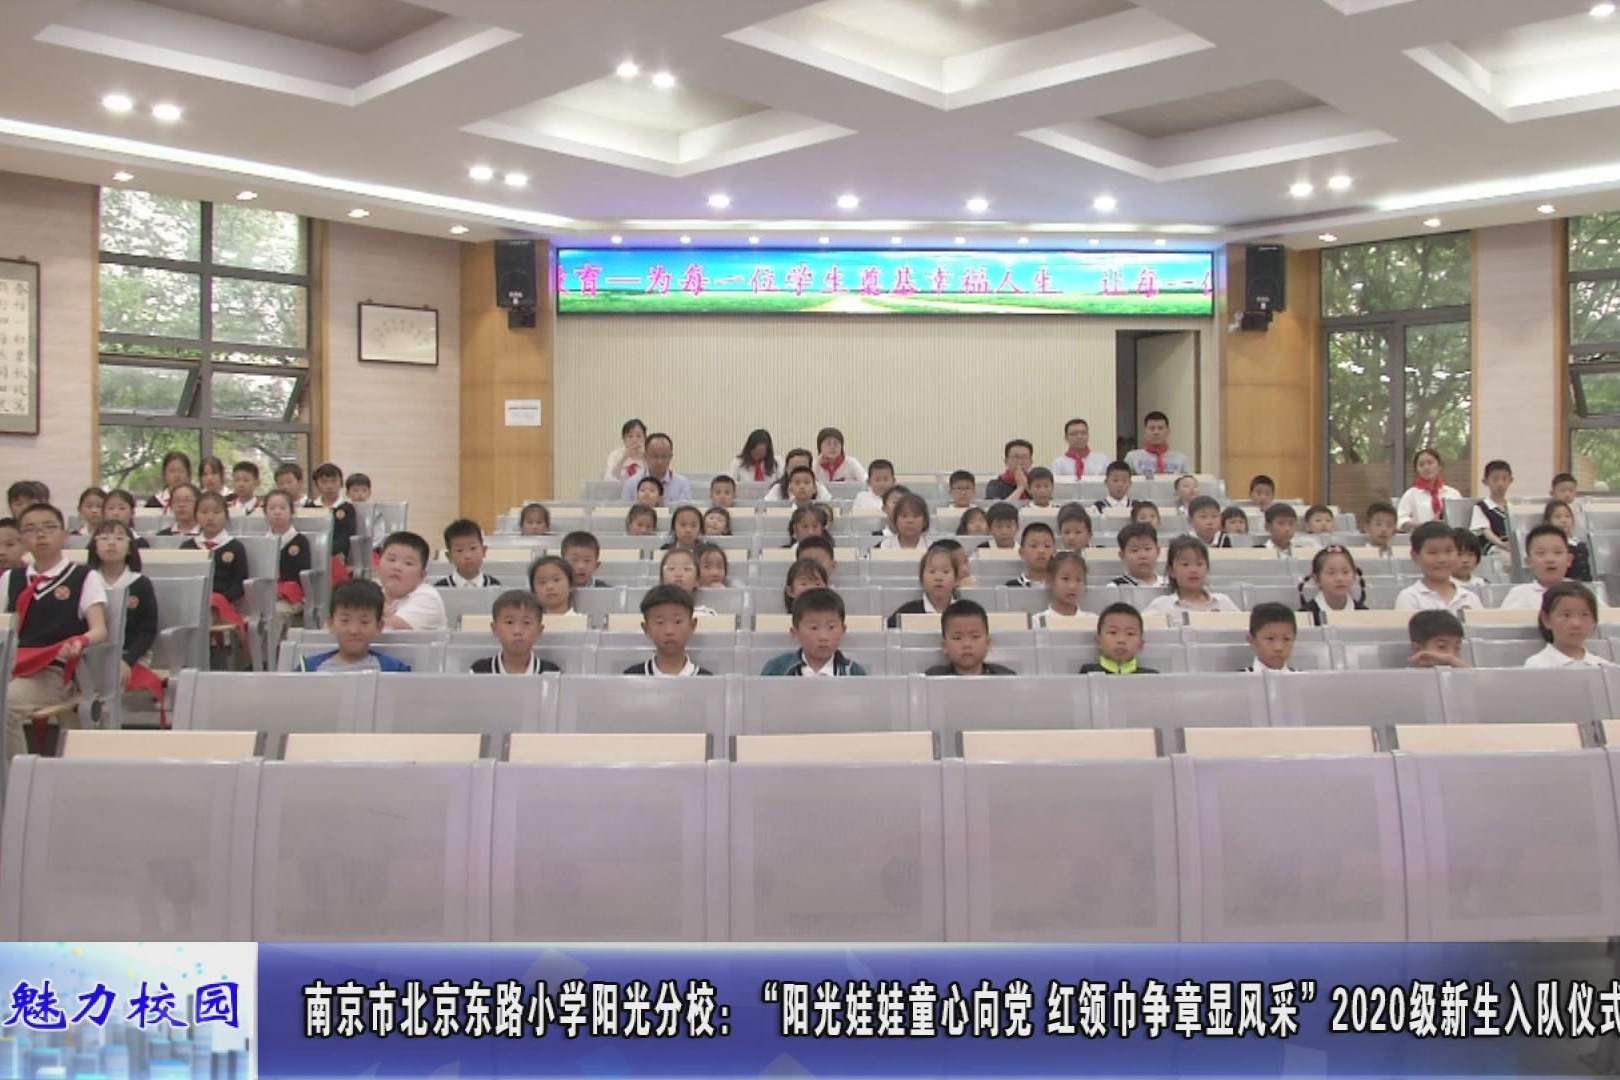 动态丨南京市北京东路小学阳光分校:2020级新生入队仪式